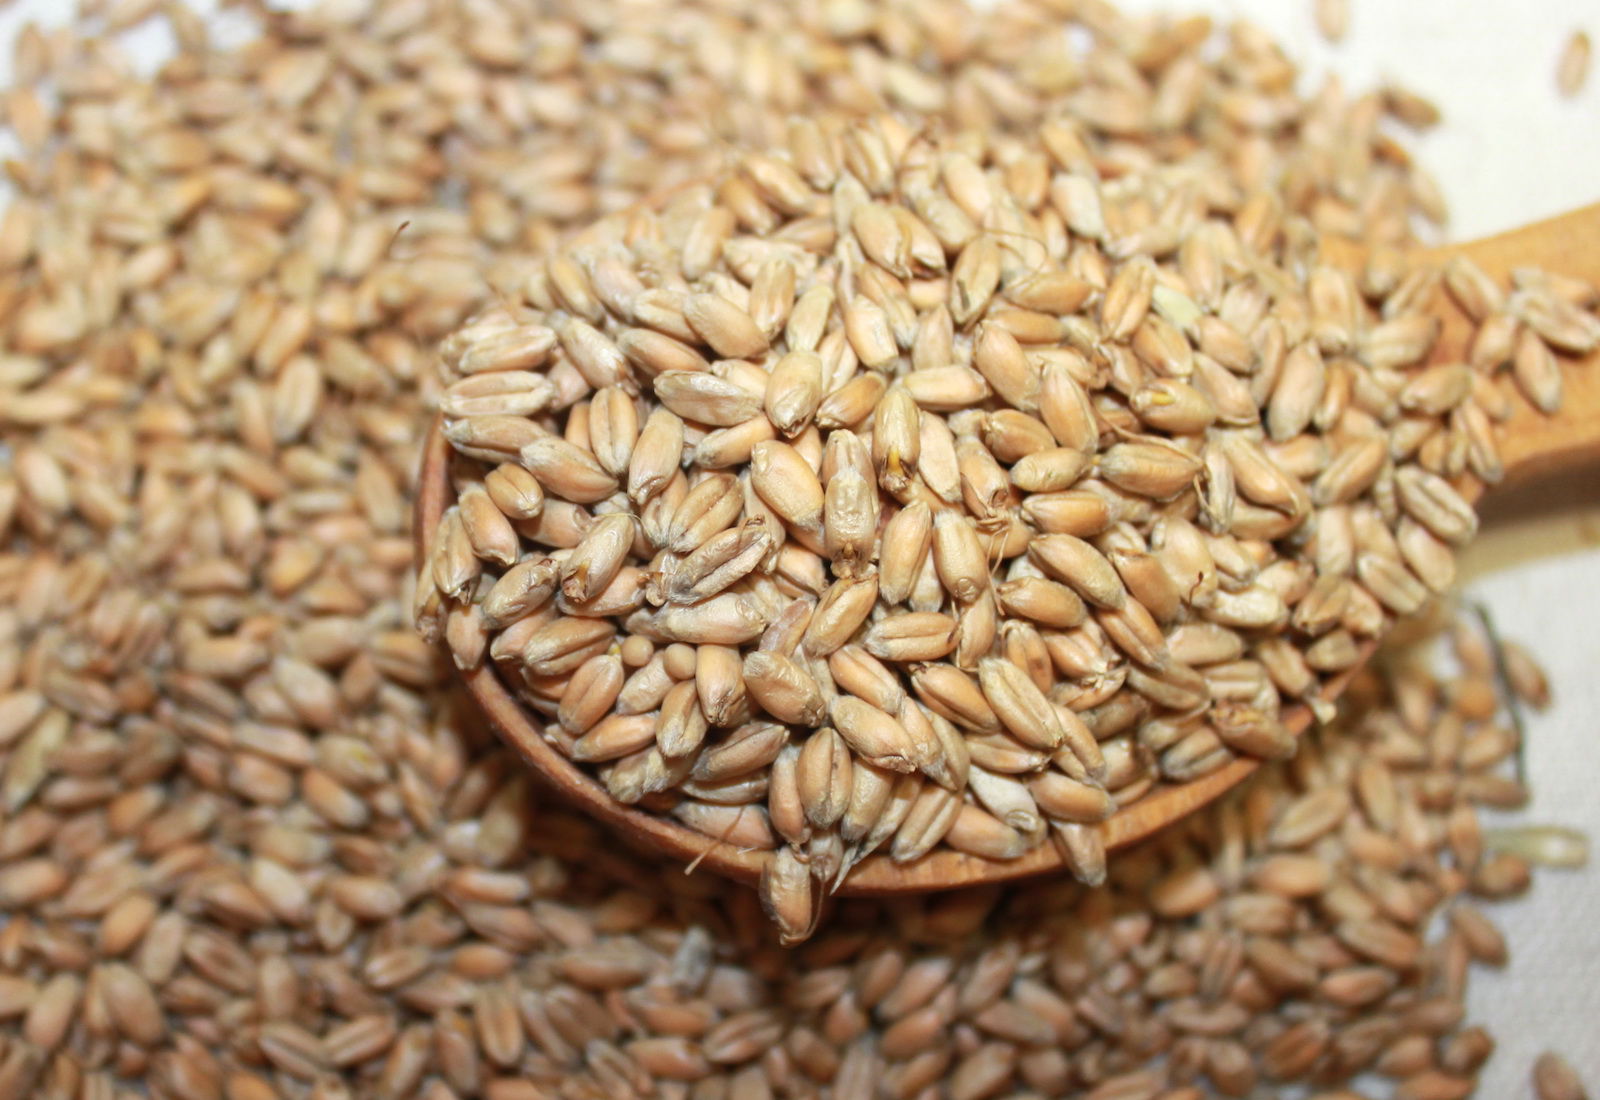 Казахстан в 2018 году сократил сбор зерновых в чистом весе на 1,5% 